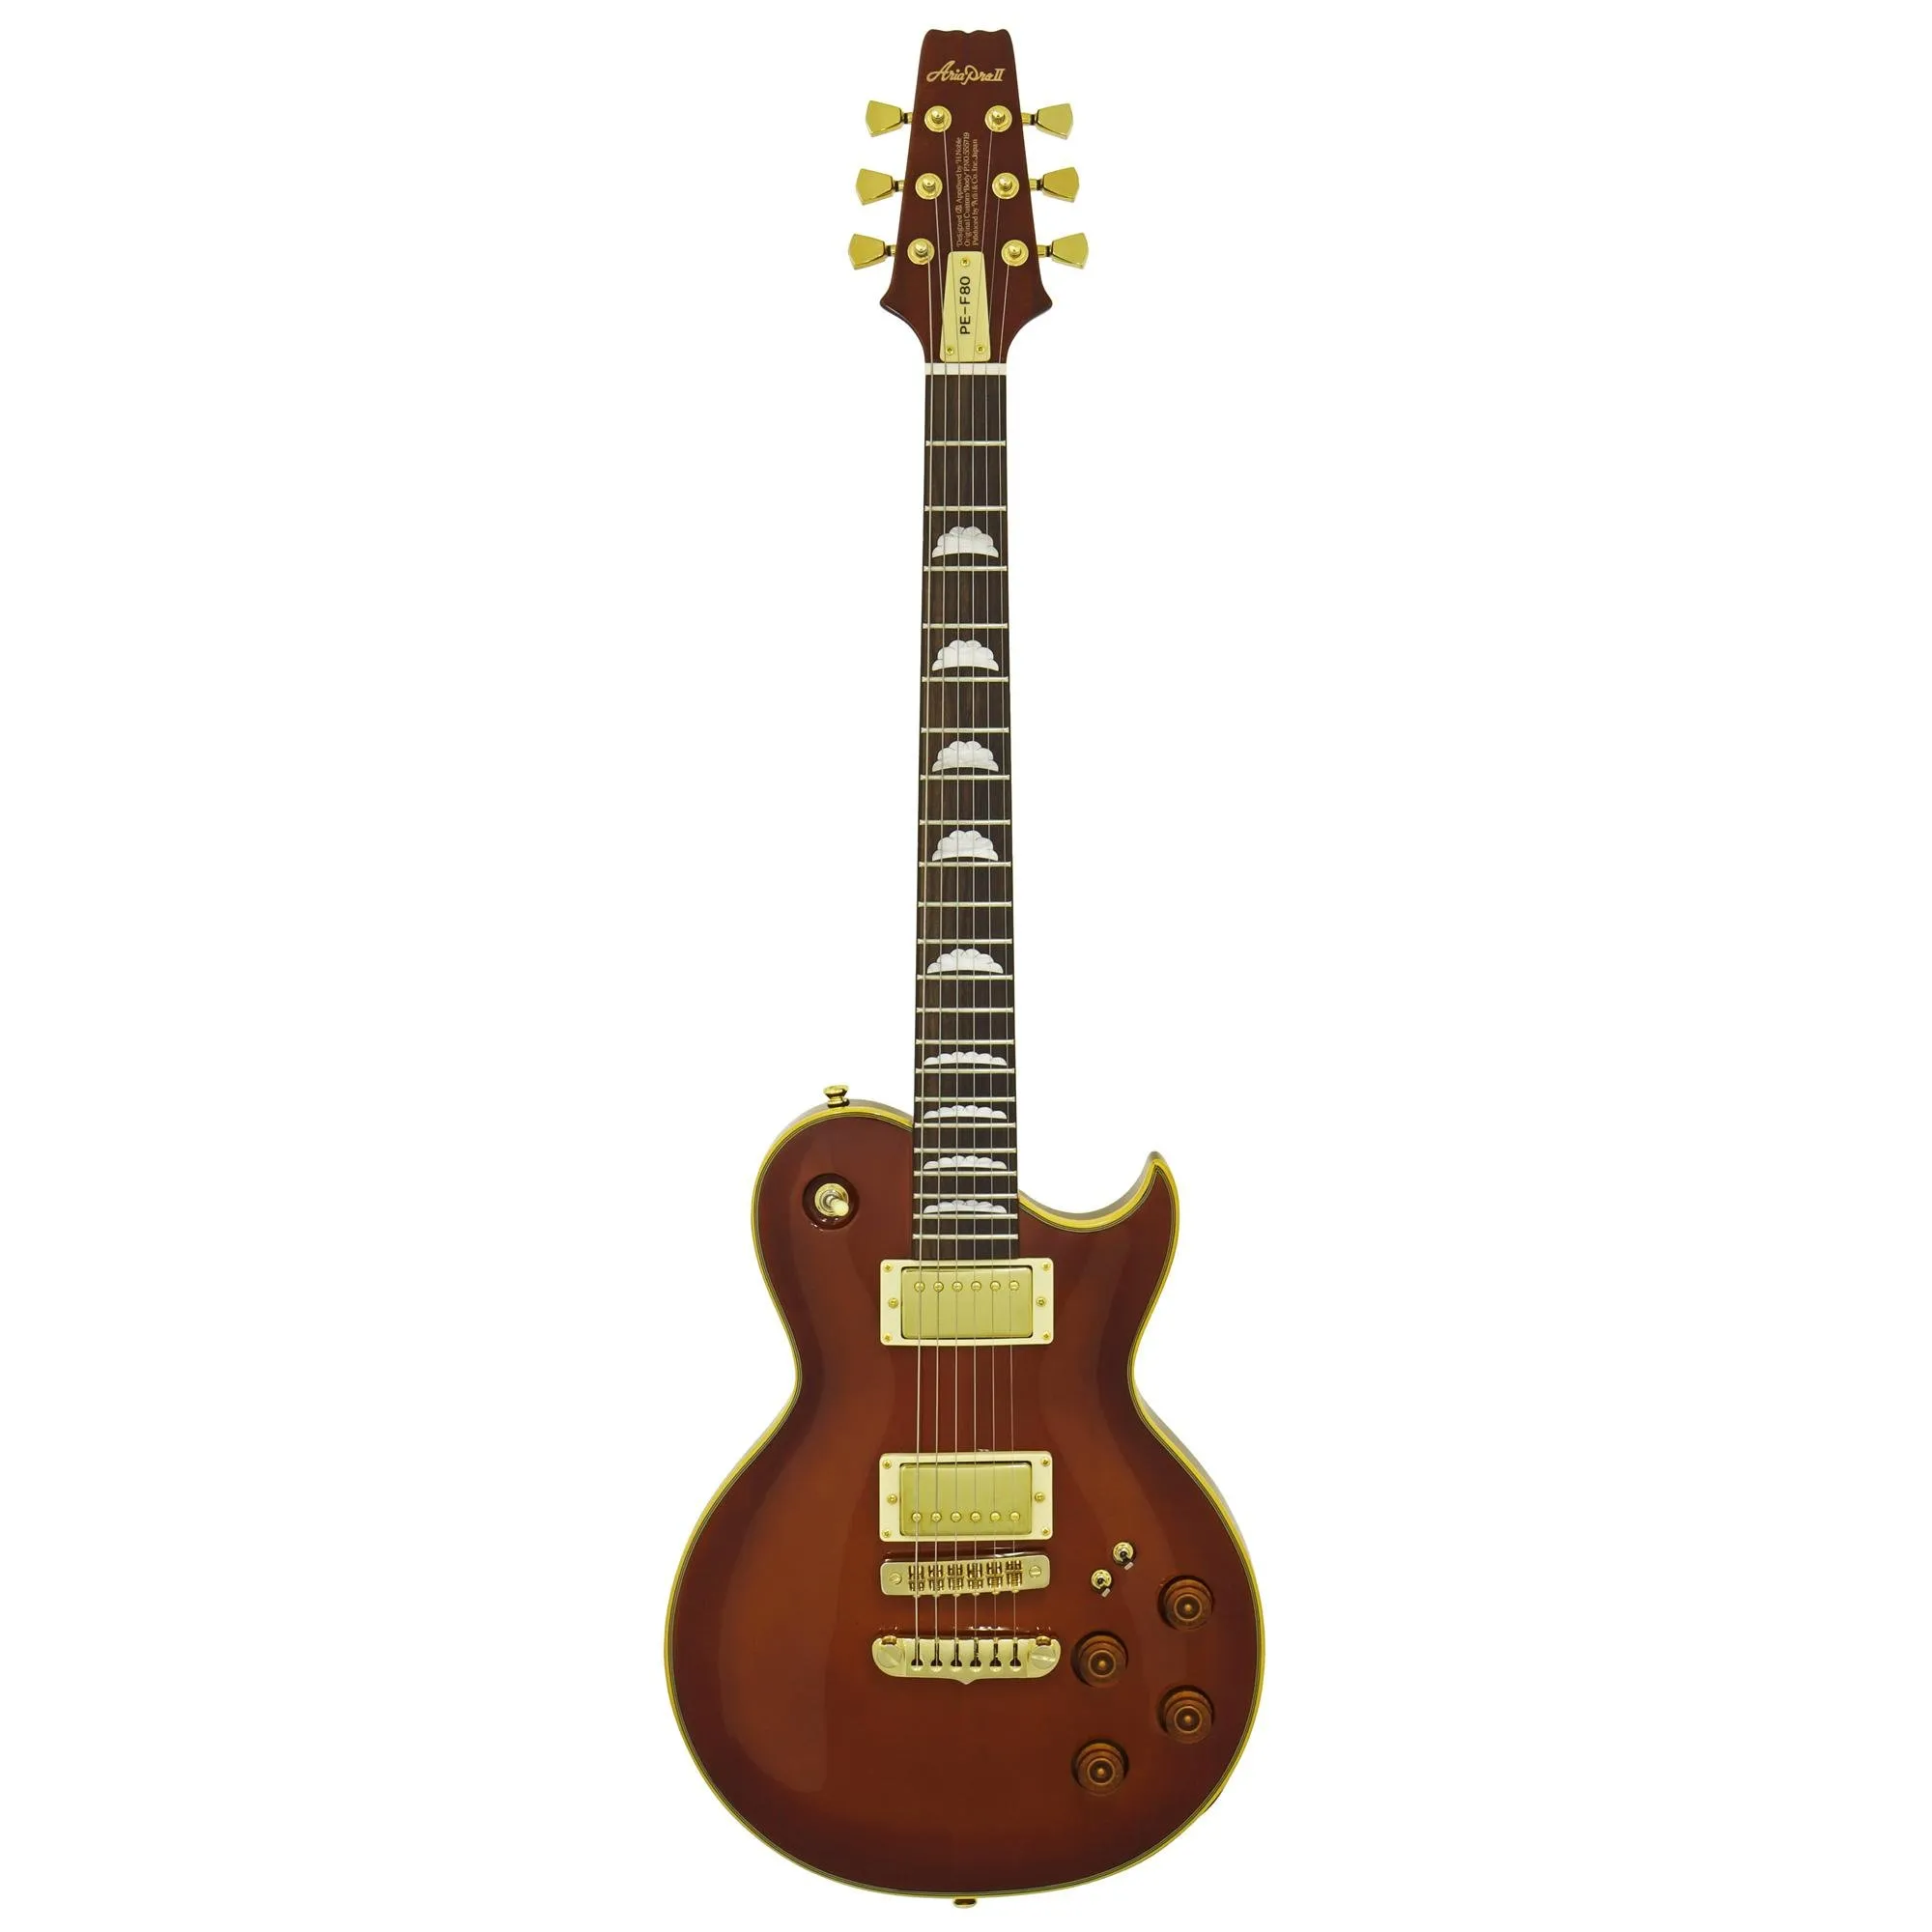 Guitarra Aria Pro II PE-F80 Stained Brown por 0,00 à vista no boleto/pix ou parcele em até 1x sem juros. Compre na loja Mundomax!